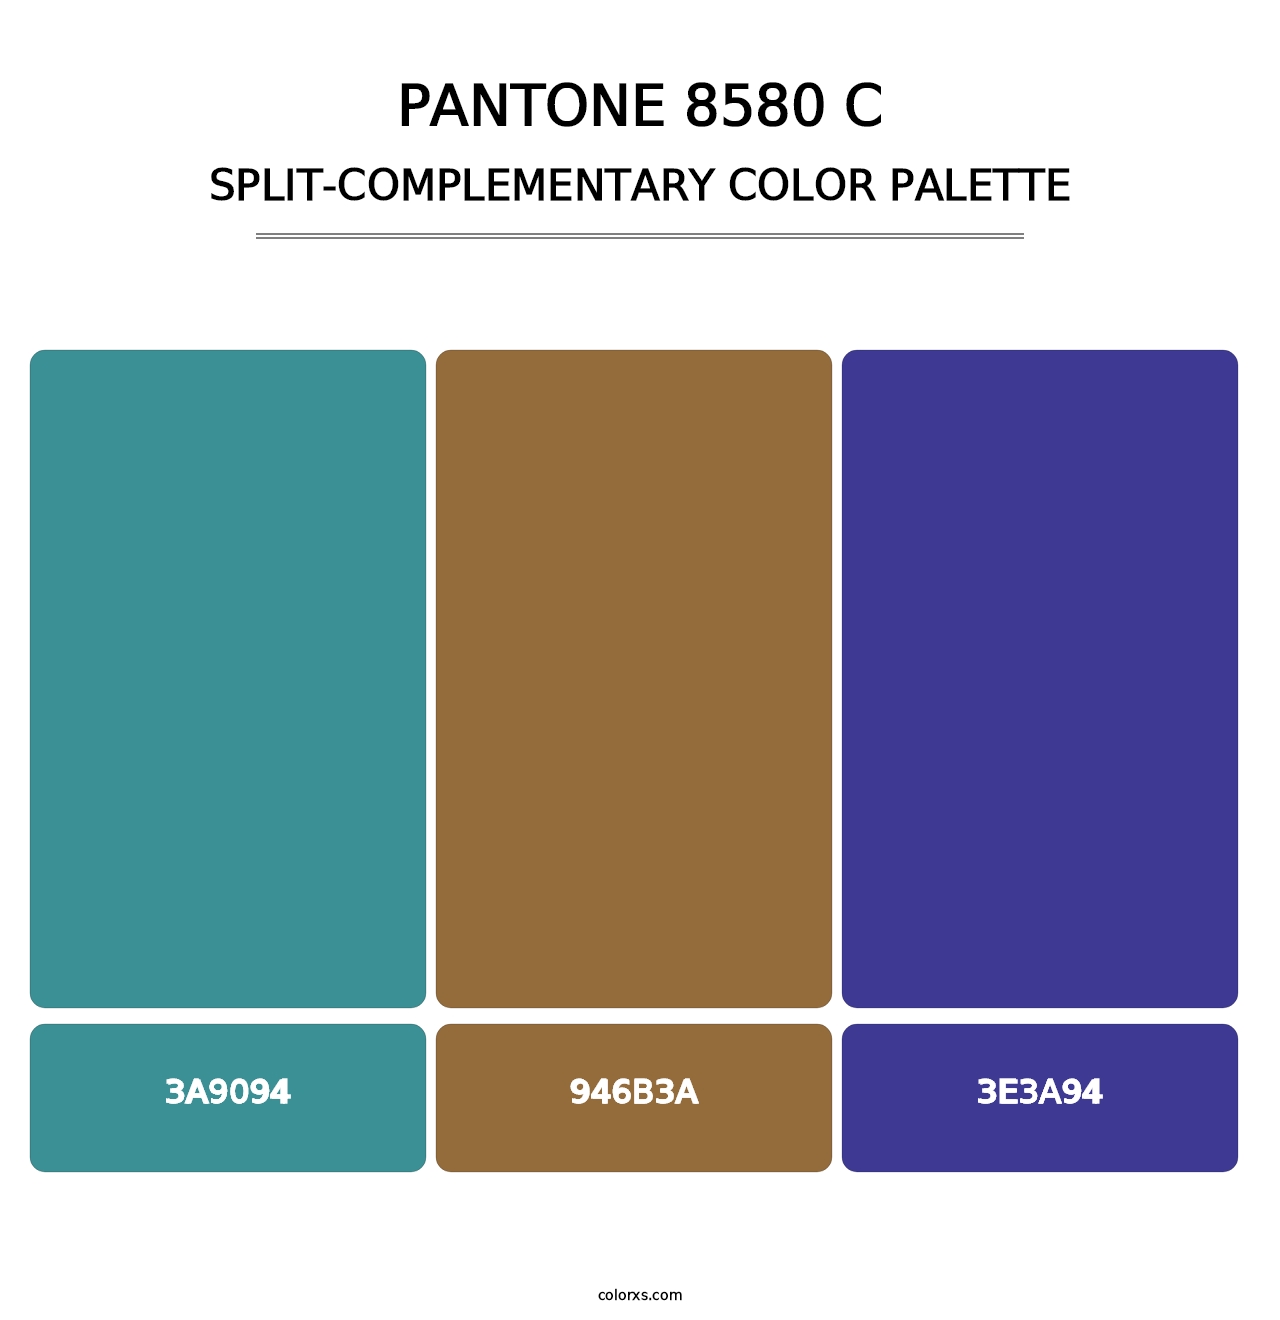 PANTONE 8580 C - Split-Complementary Color Palette